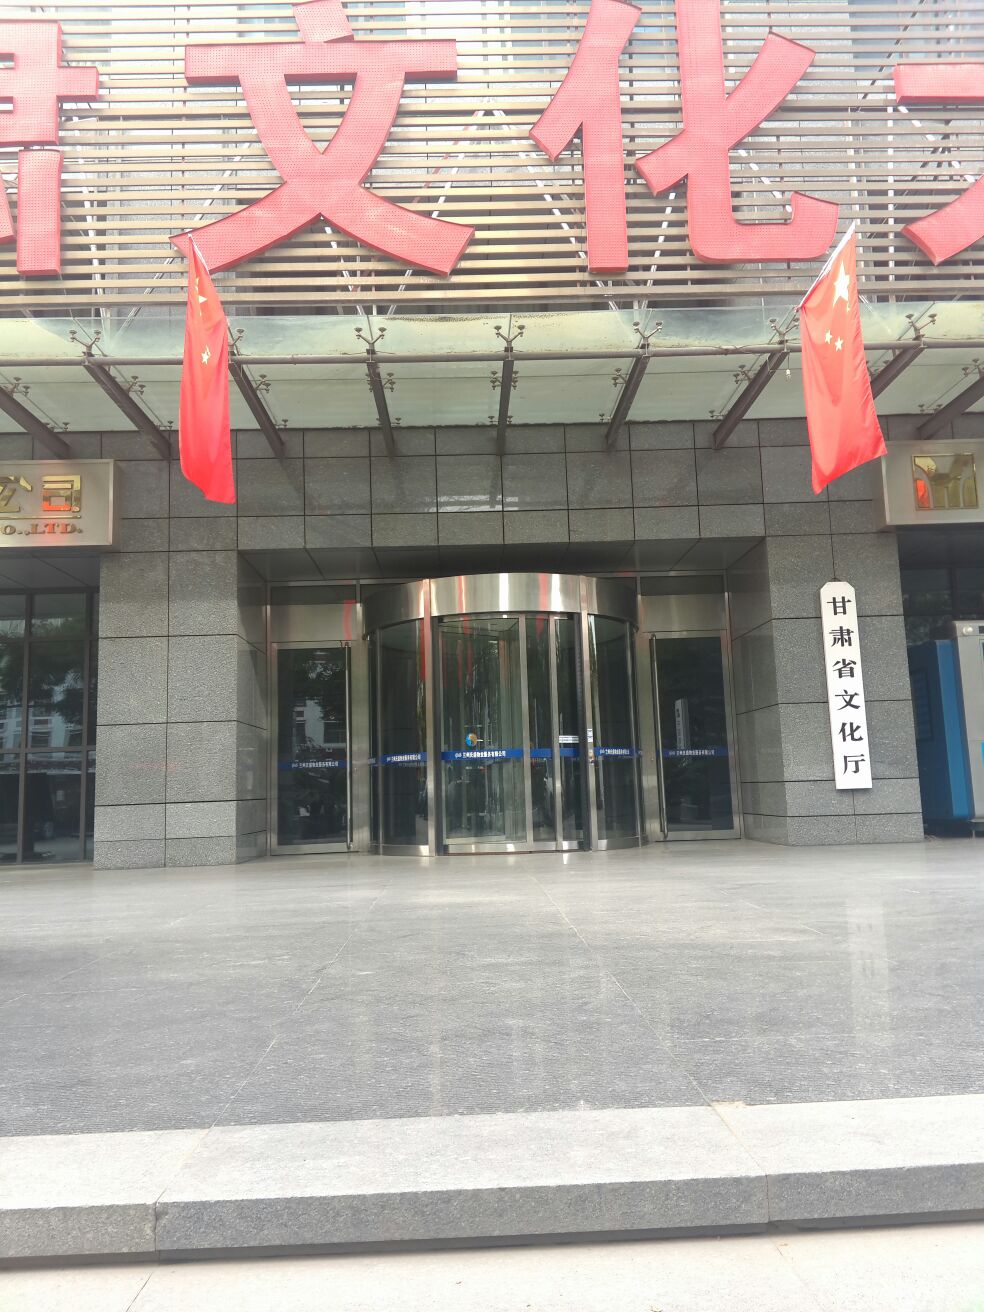 甘肅省文化廳(東崗西路)